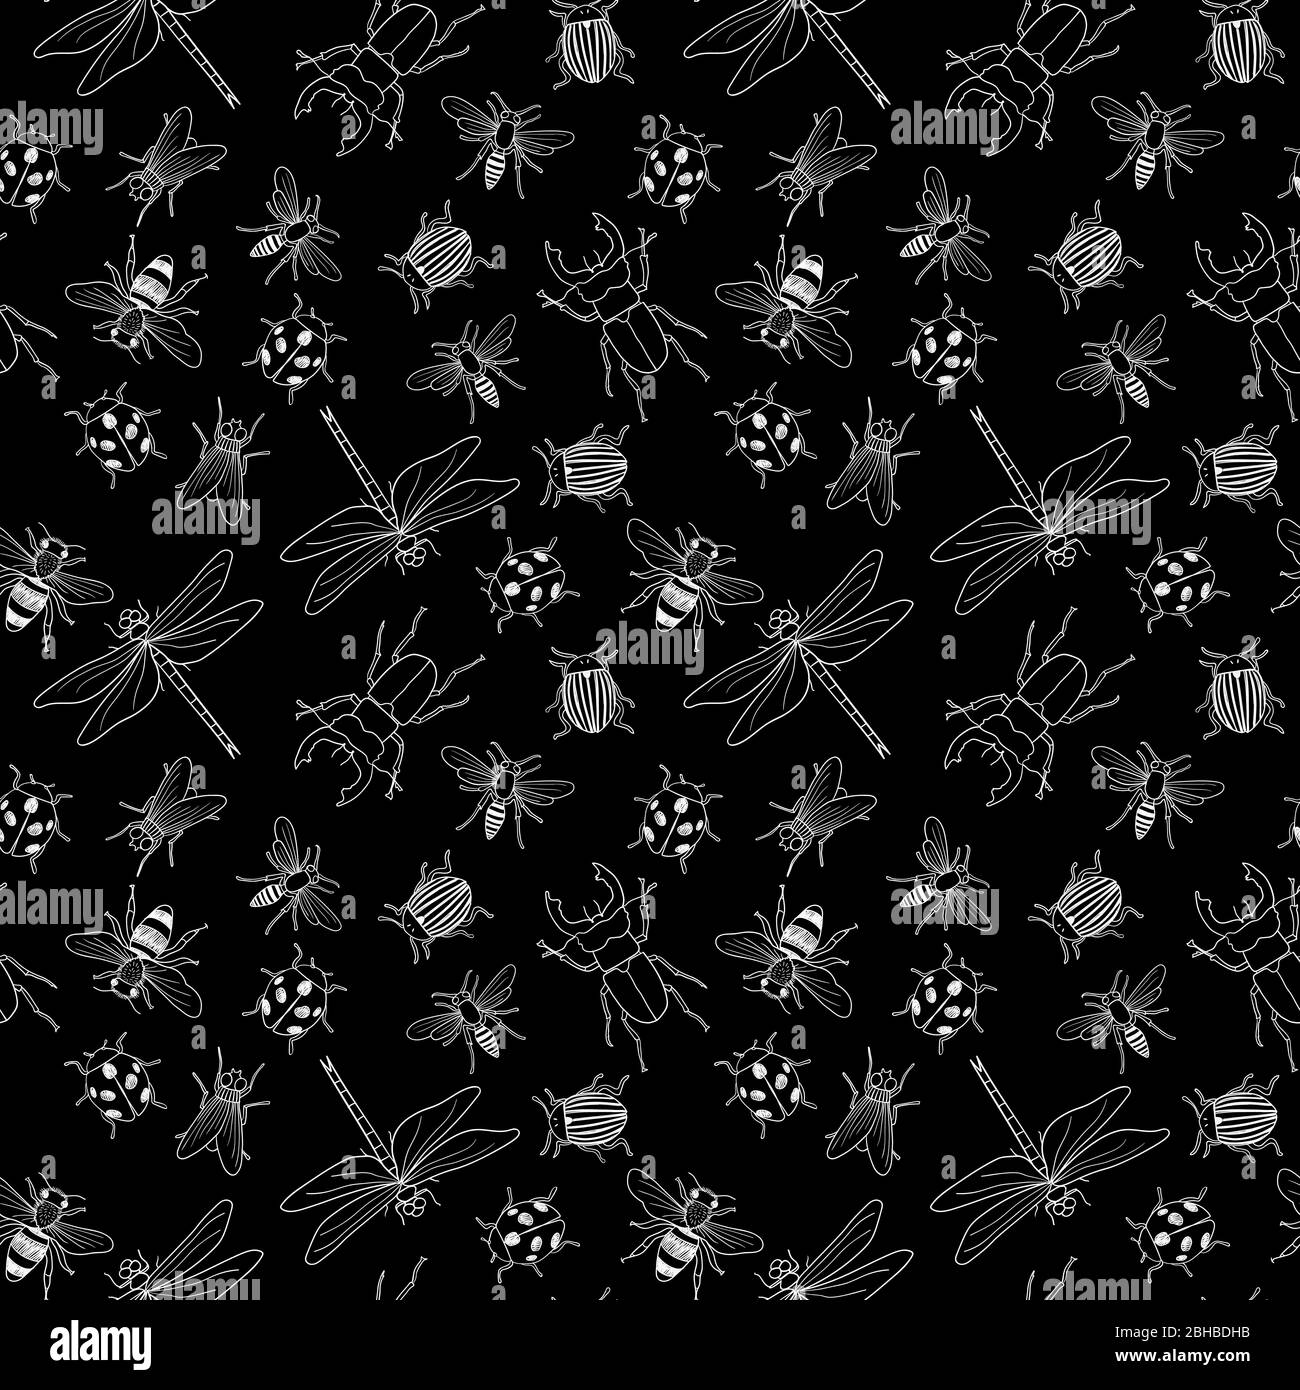 Vecteur noir et blanc sans couture de différents insectes isolés de gribouille dessinés à la main Illustration de Vecteur